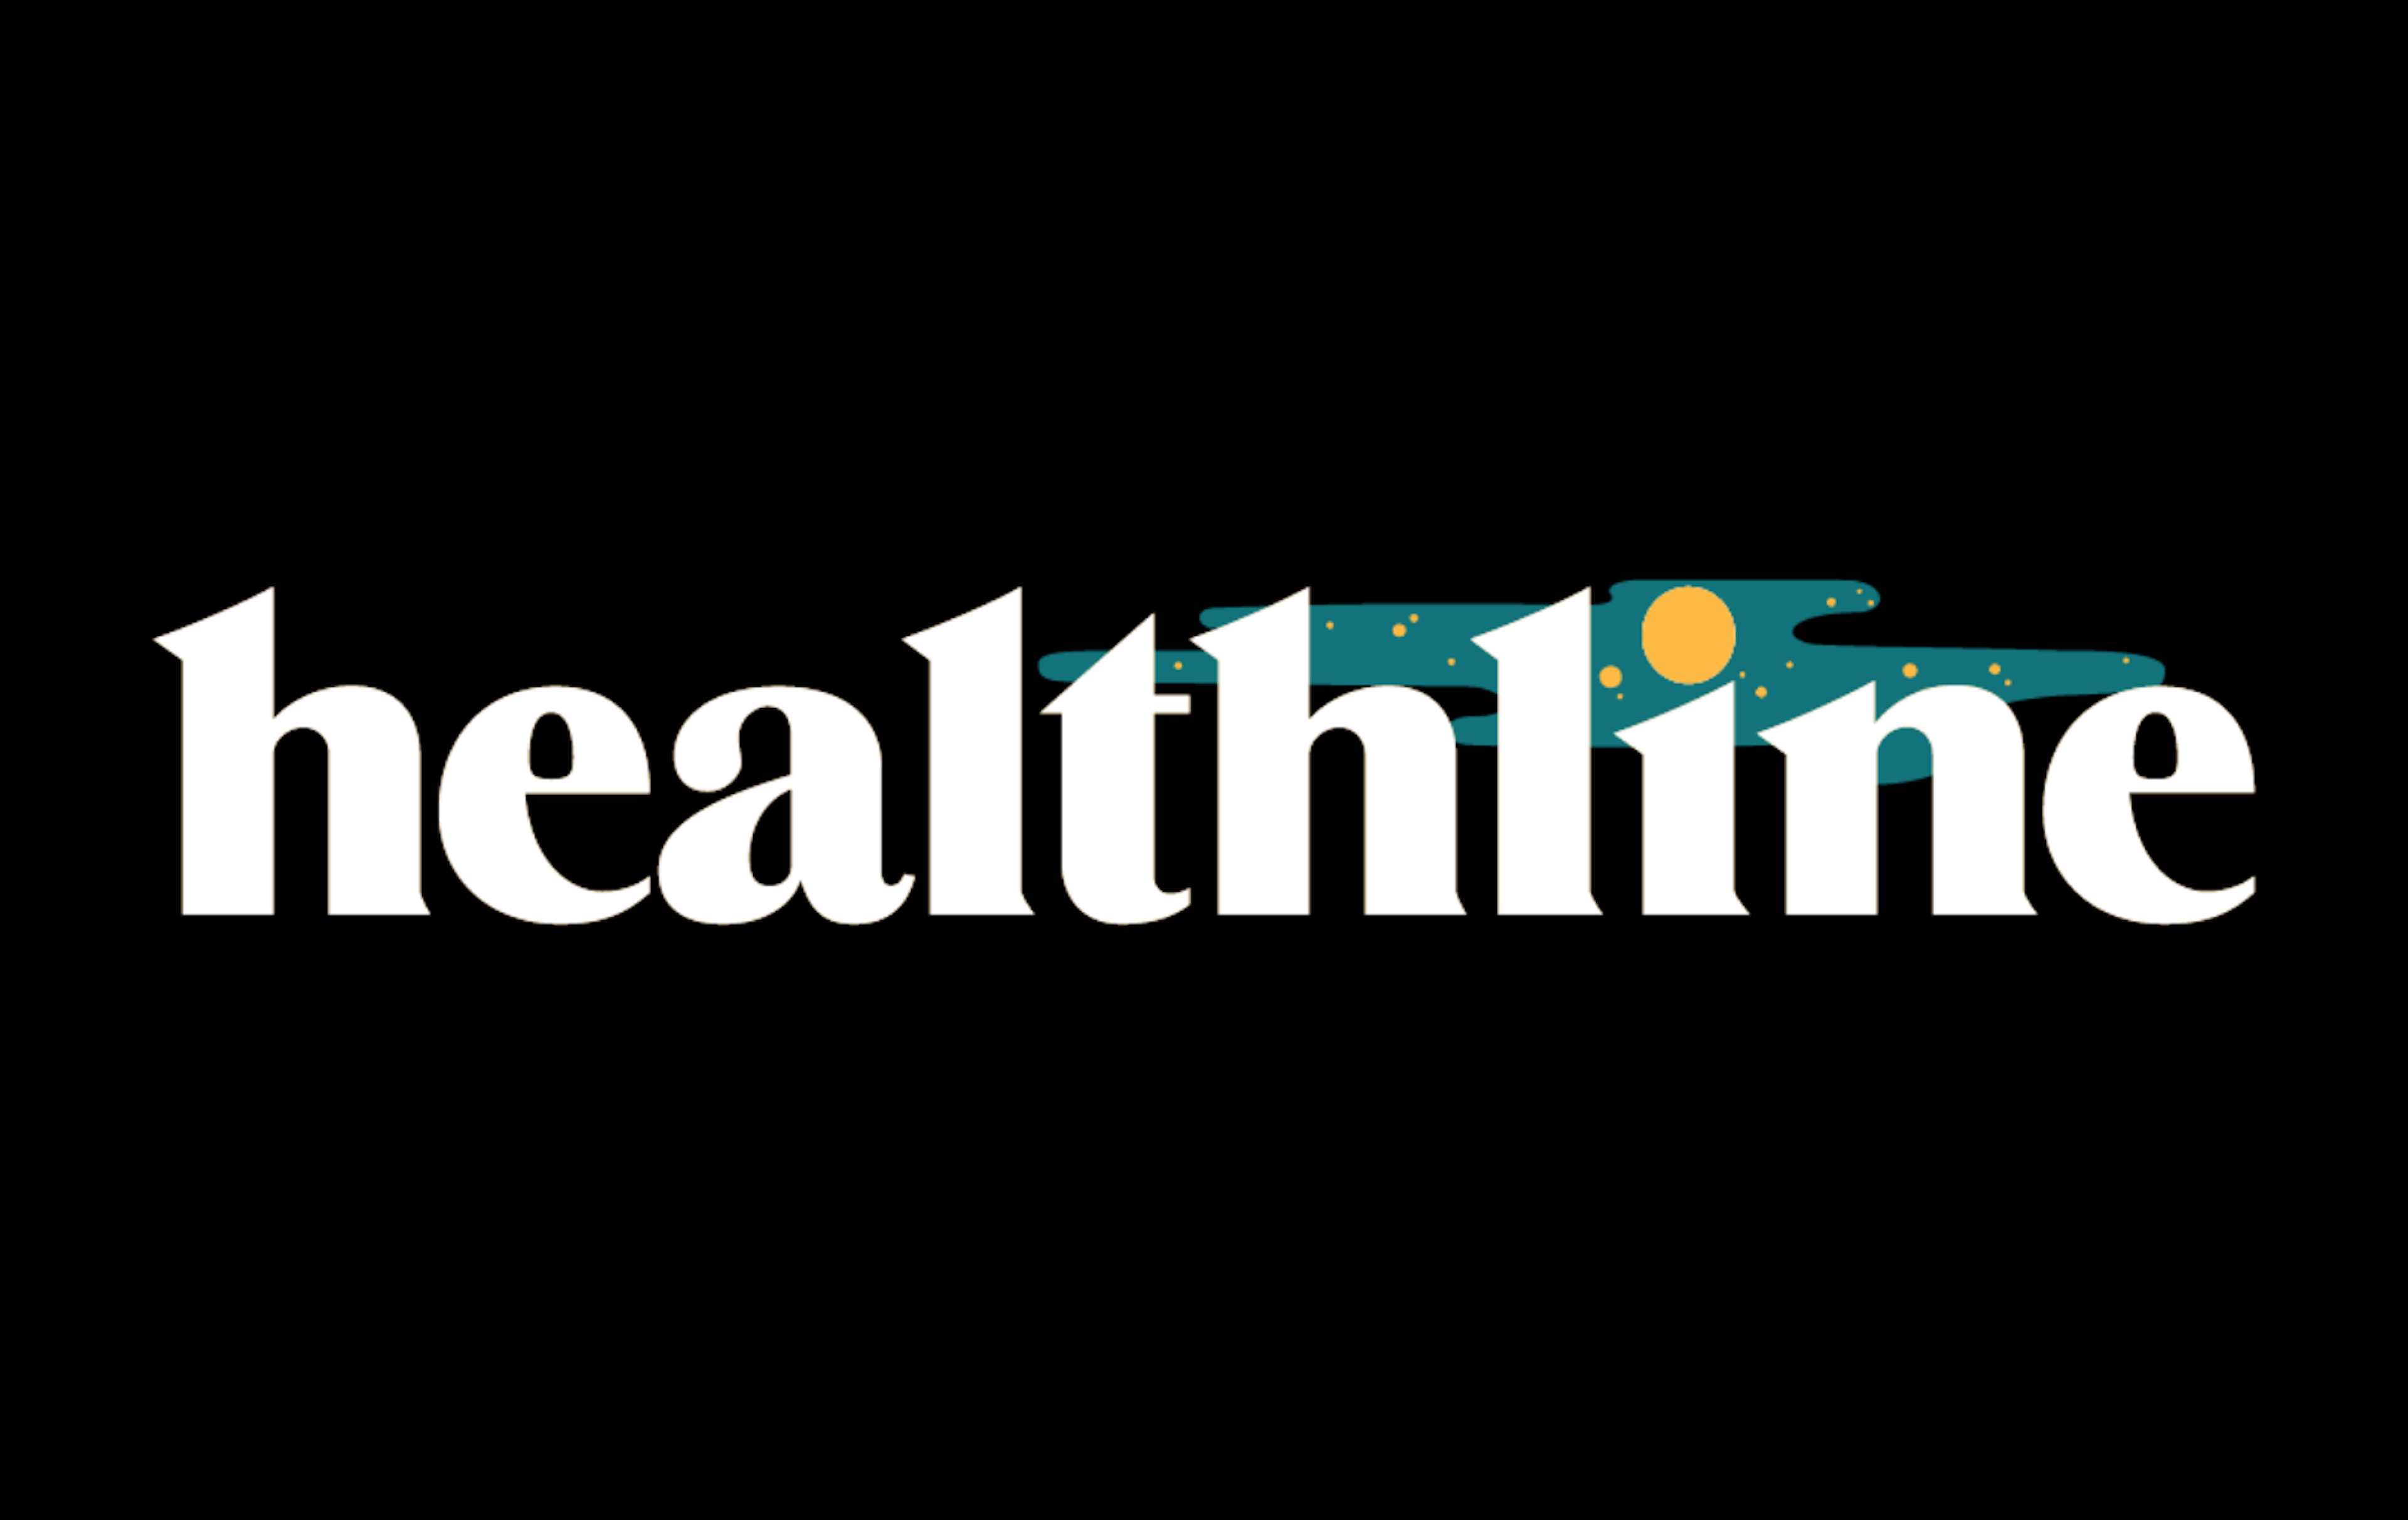 Healthline logo